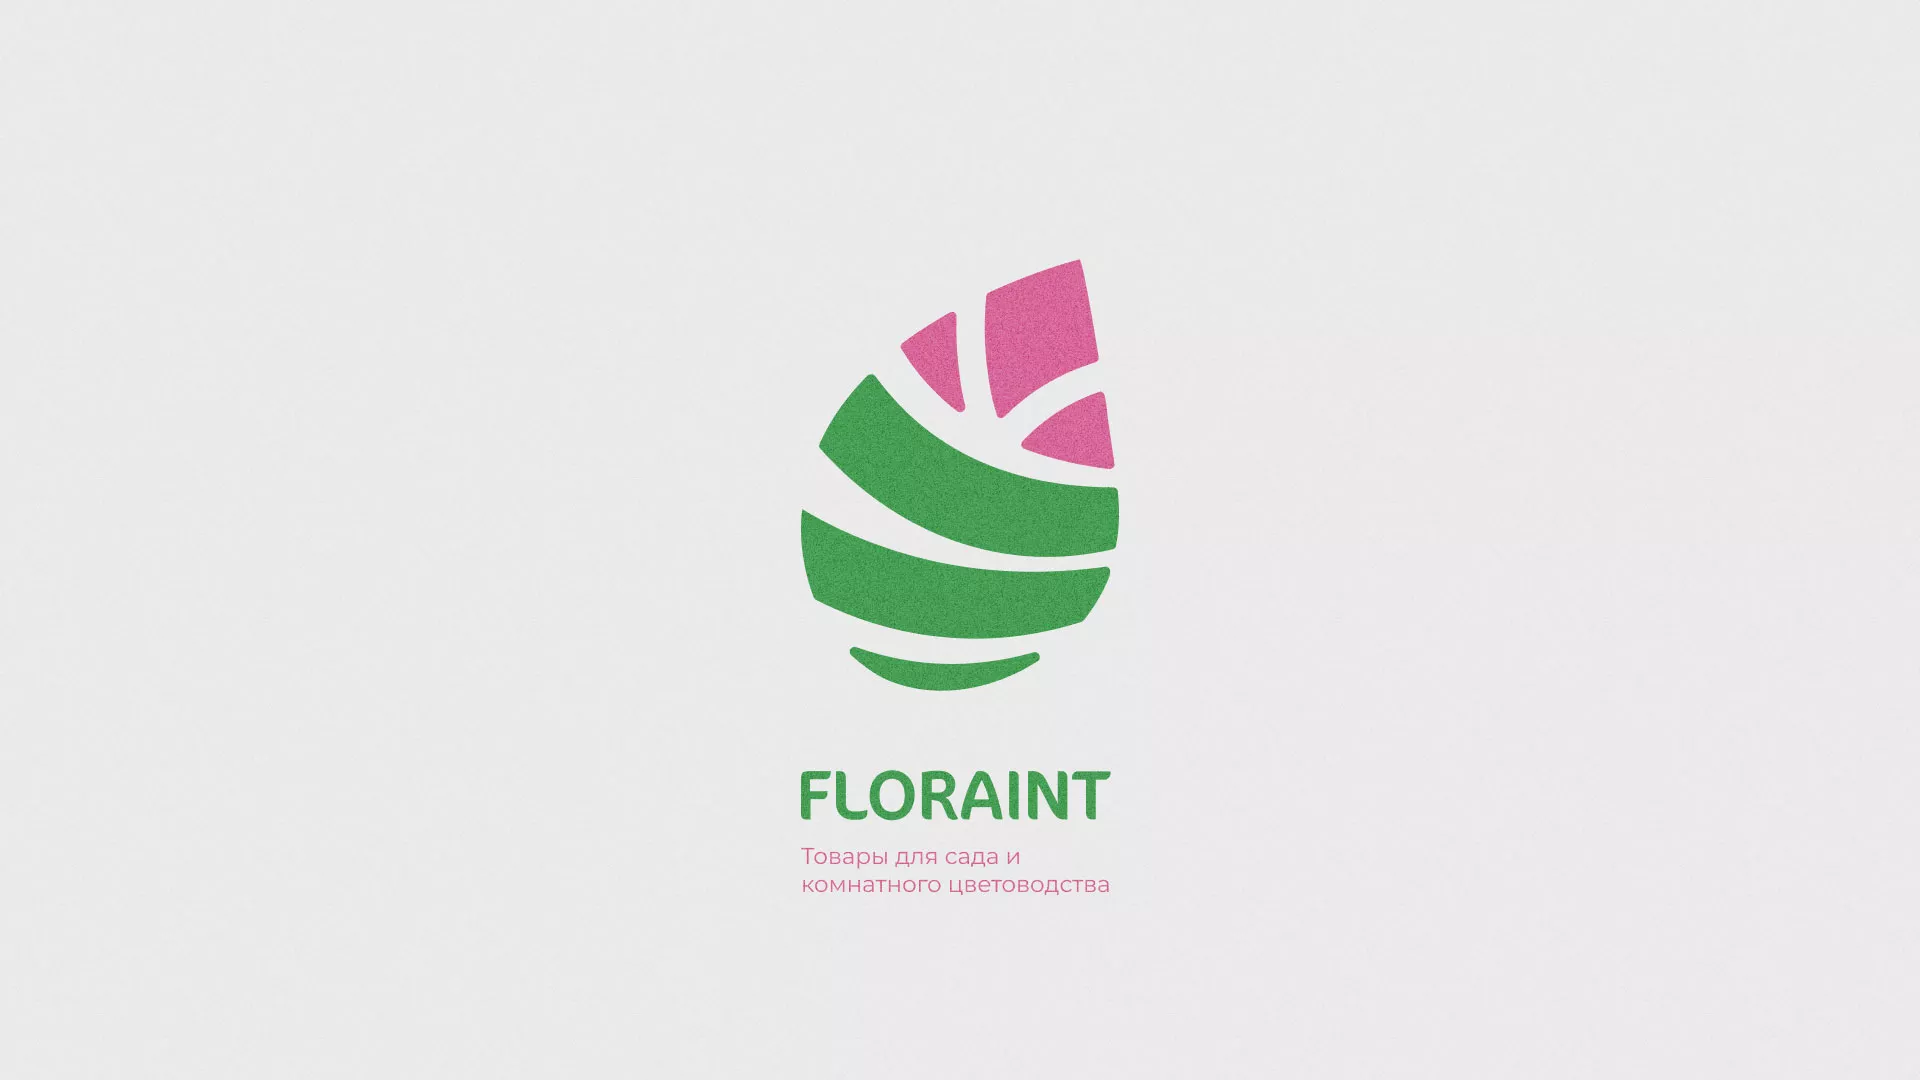 Разработка оформления профиля Instagram для магазина «Floraint» в Чкаловском